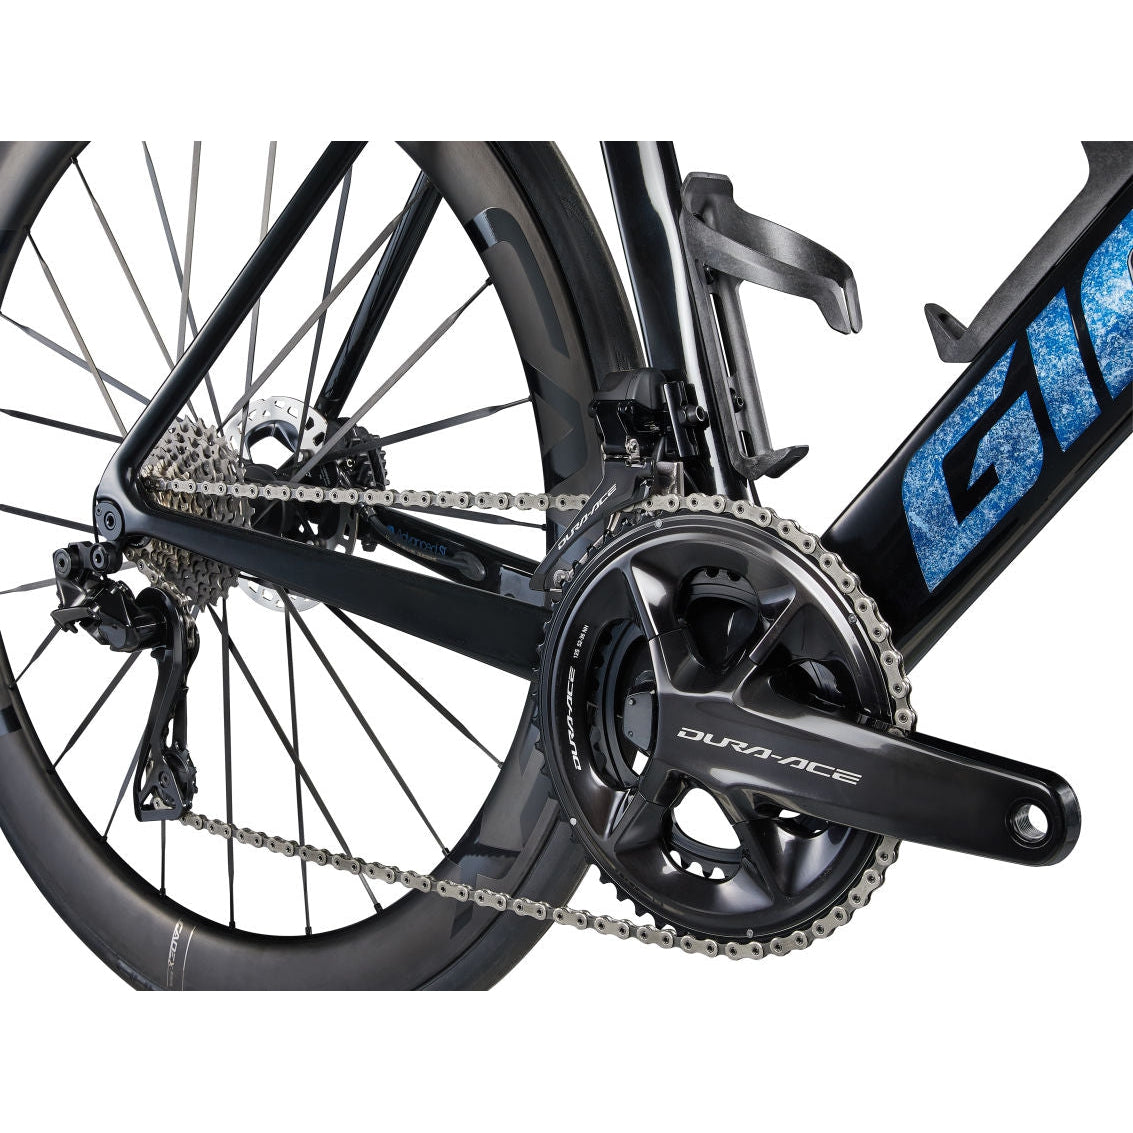 Giant Propel Advanced SL 0 Road Bike - Bikes - Bicycle Warehouse